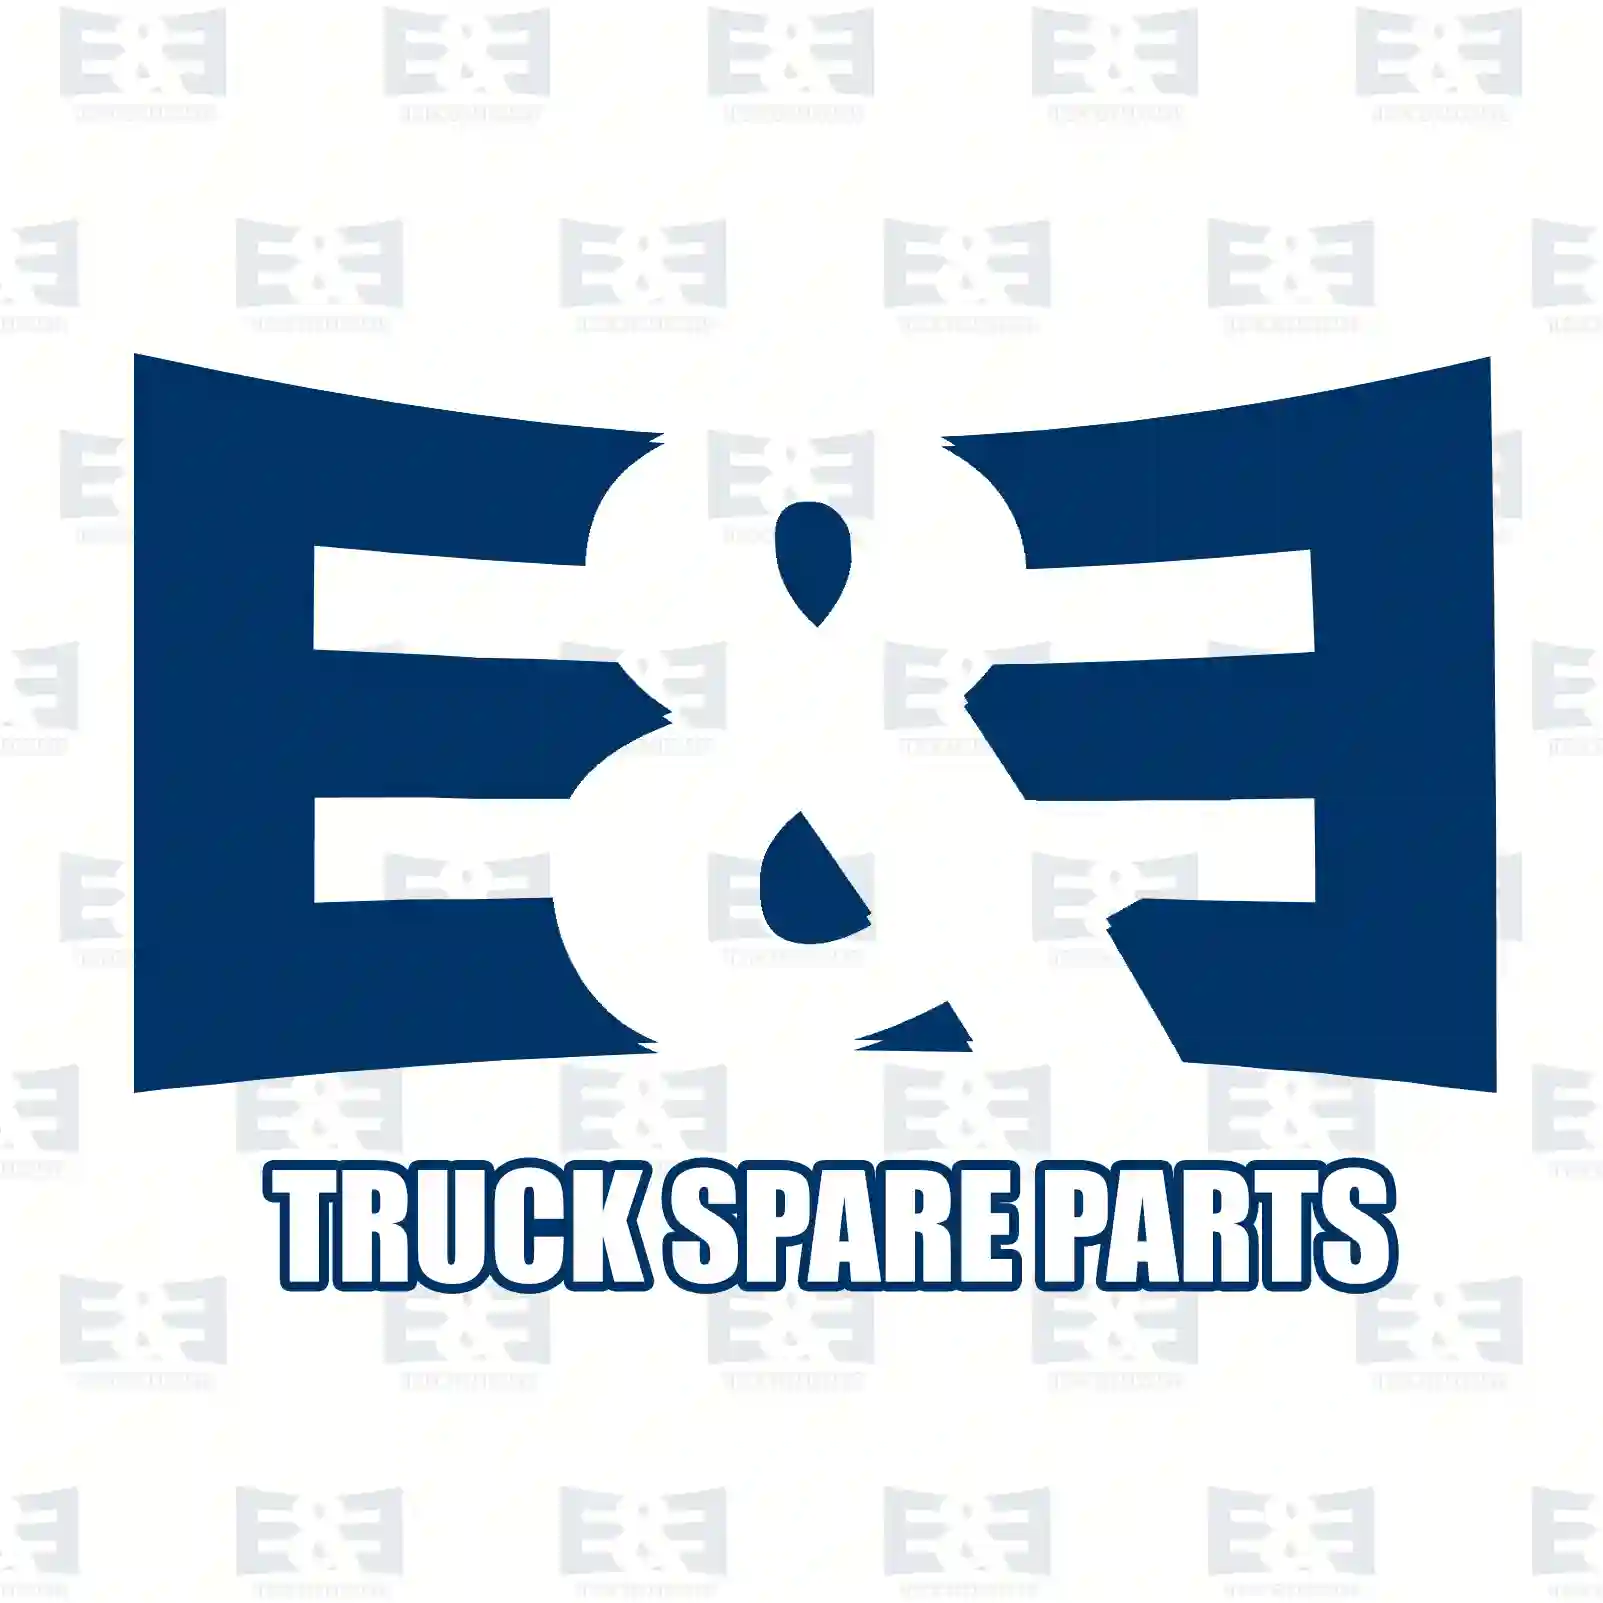 Pulley, crankshaft, 2E2200408, 0515S9, 1386188, 1434432, 1539837, 1723700, 6C1Q-6B319-AD, 6C1Q-6B319-AE, 6C1Q-6B319-AF, BU3Q-6B319-AA, 0515S9 ||  2E2200408 E&E Truck Spare Parts | Truck Spare Parts, Auotomotive Spare Parts Pulley, crankshaft, 2E2200408, 0515S9, 1386188, 1434432, 1539837, 1723700, 6C1Q-6B319-AD, 6C1Q-6B319-AE, 6C1Q-6B319-AF, BU3Q-6B319-AA, 0515S9 ||  2E2200408 E&E Truck Spare Parts | Truck Spare Parts, Auotomotive Spare Parts